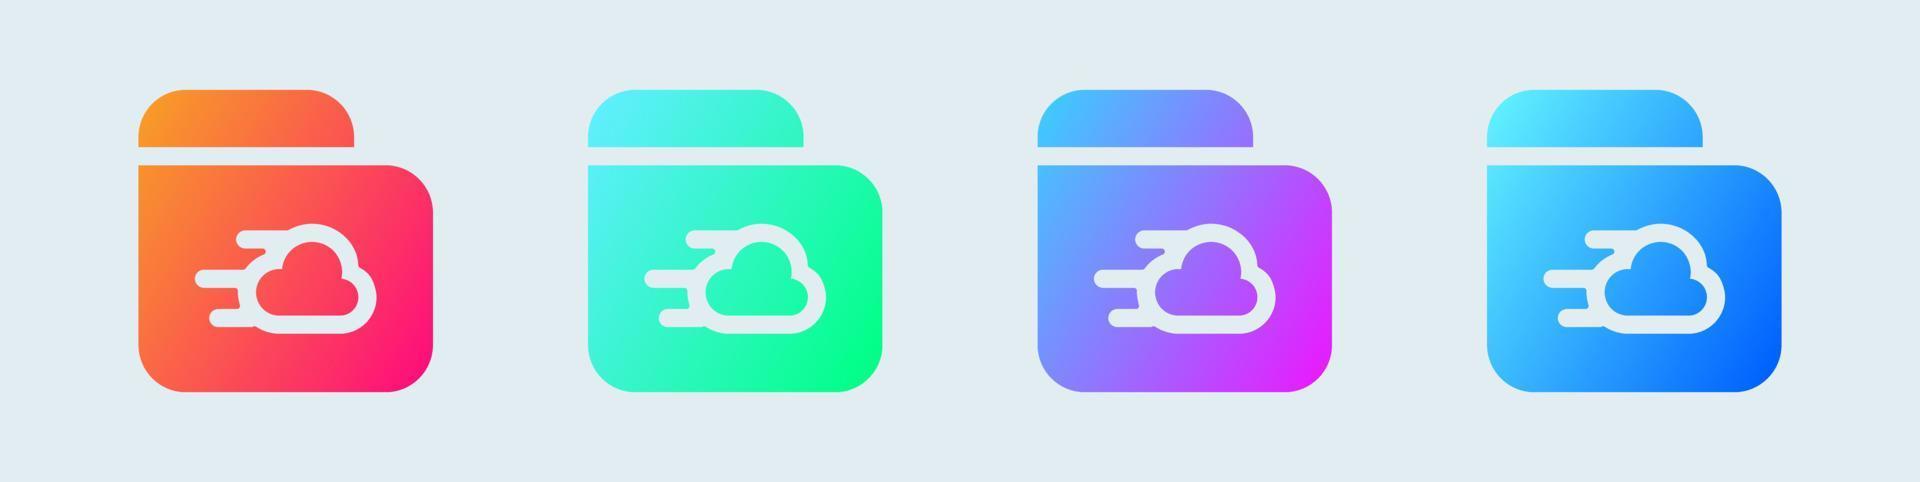 icône solide de stockage en nuage dans des dégradés de couleurs. illustration vectorielle de signes de base de données réseau. vecteur